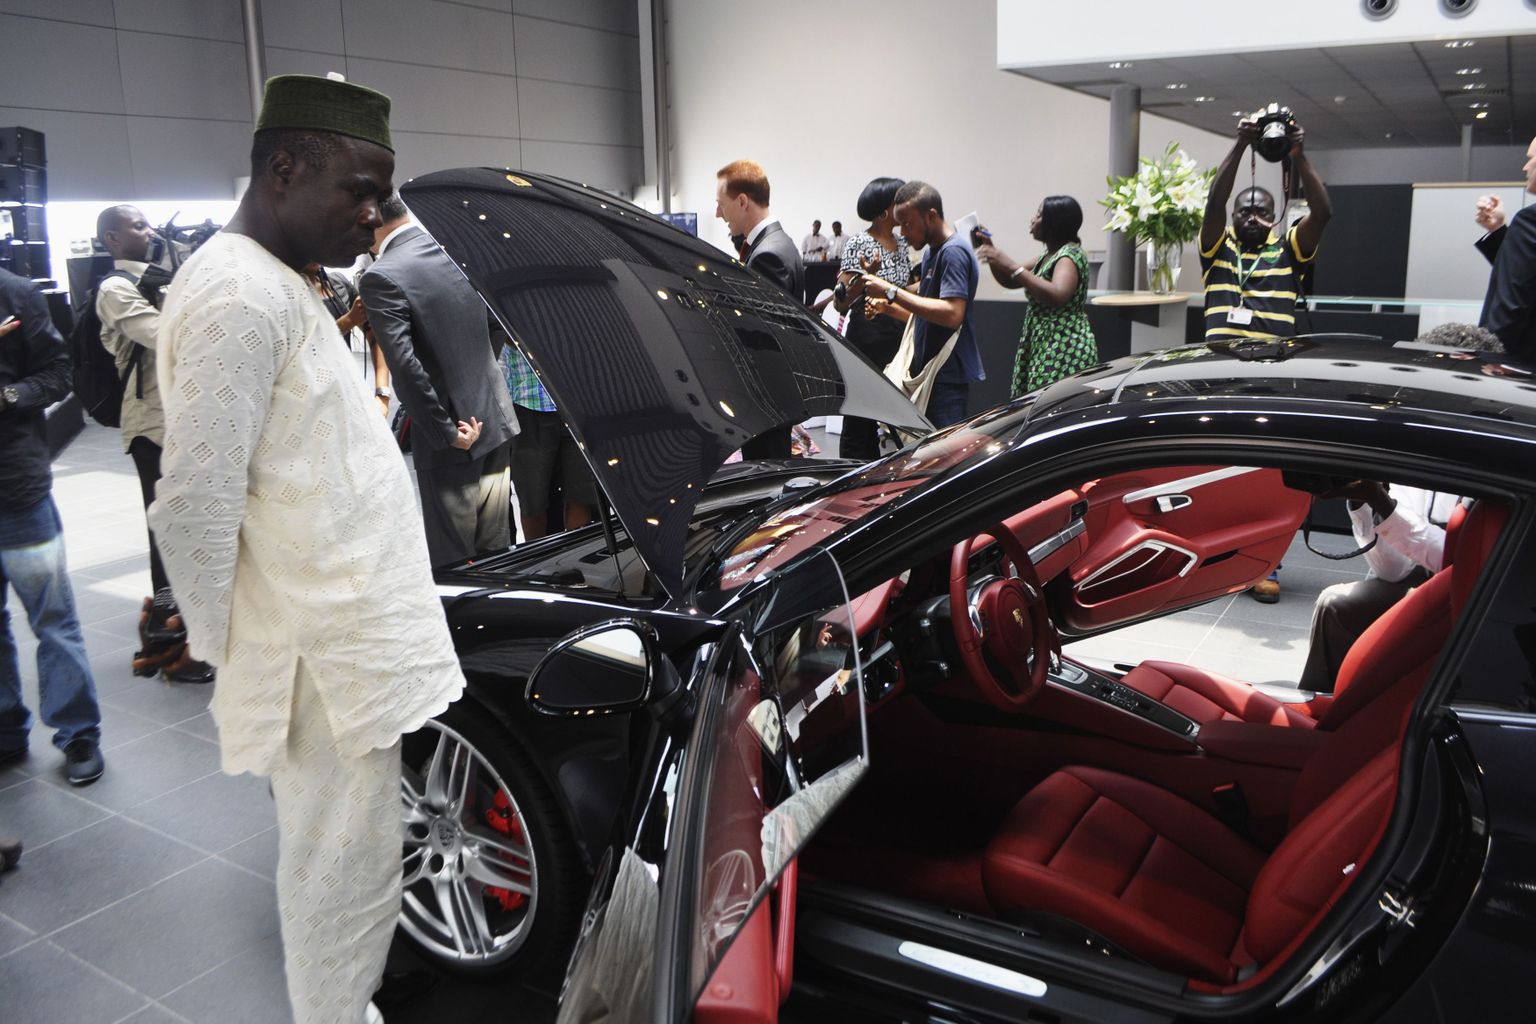 Nigeeria noored ja jõukad Lagoses avatud Porsche esindussalongis autosid uurimas.